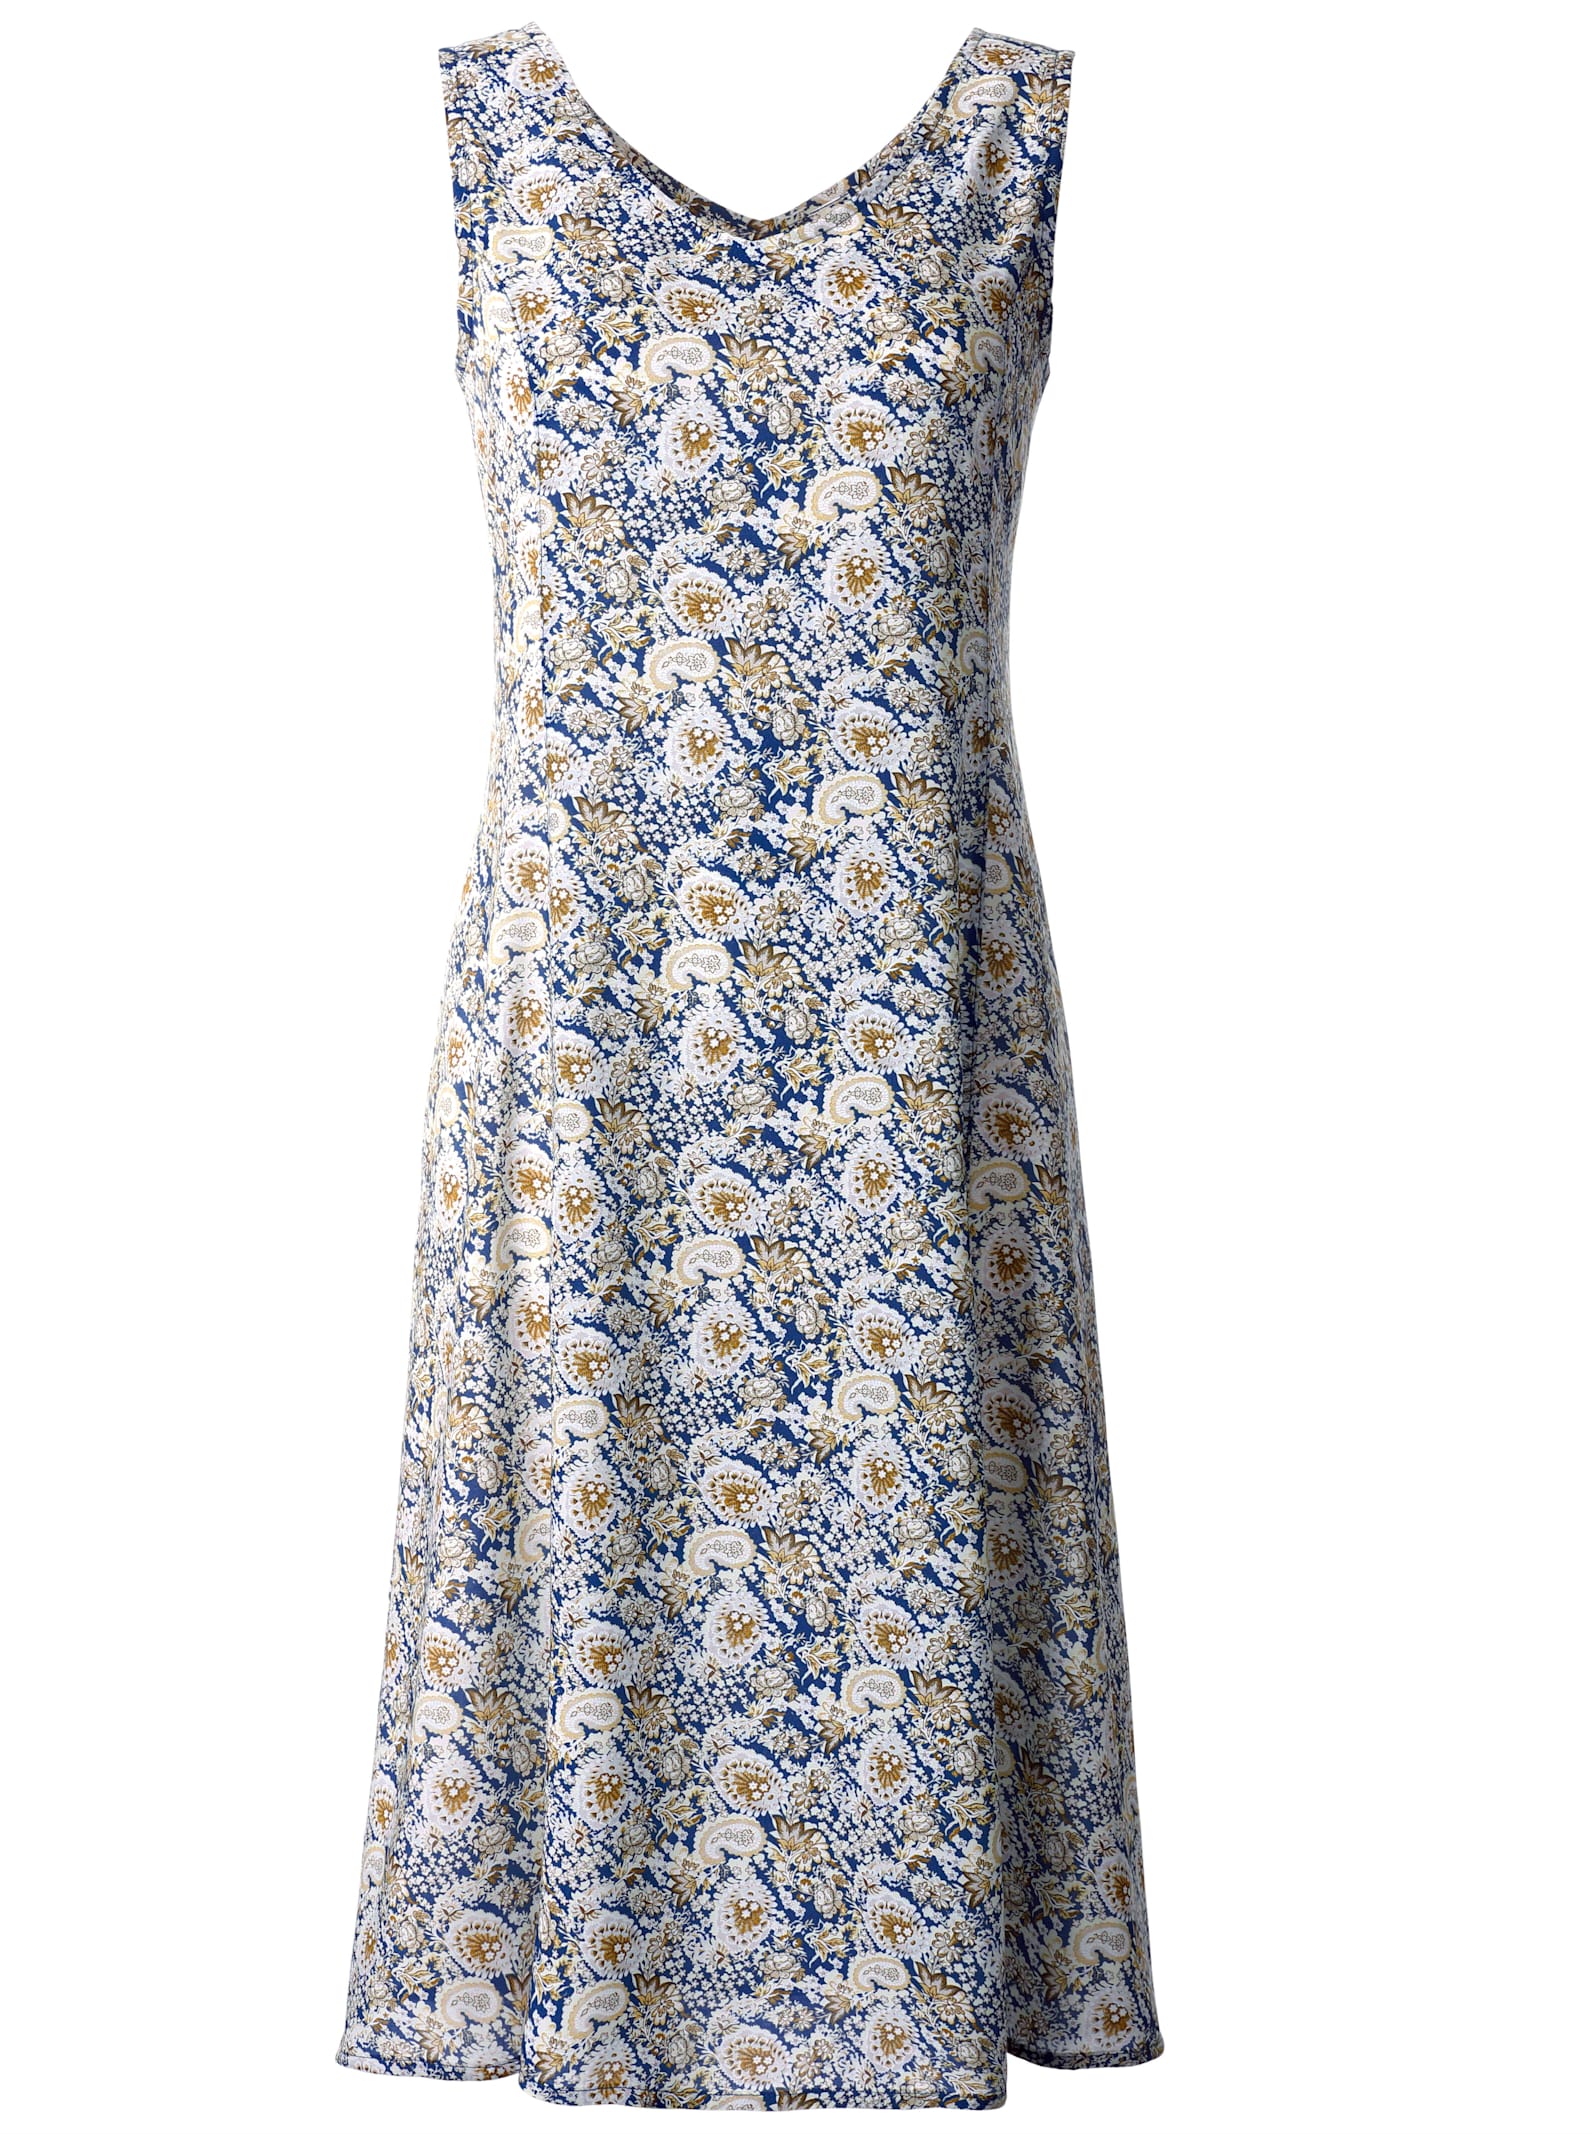 Klänning med tryck - blå paisley